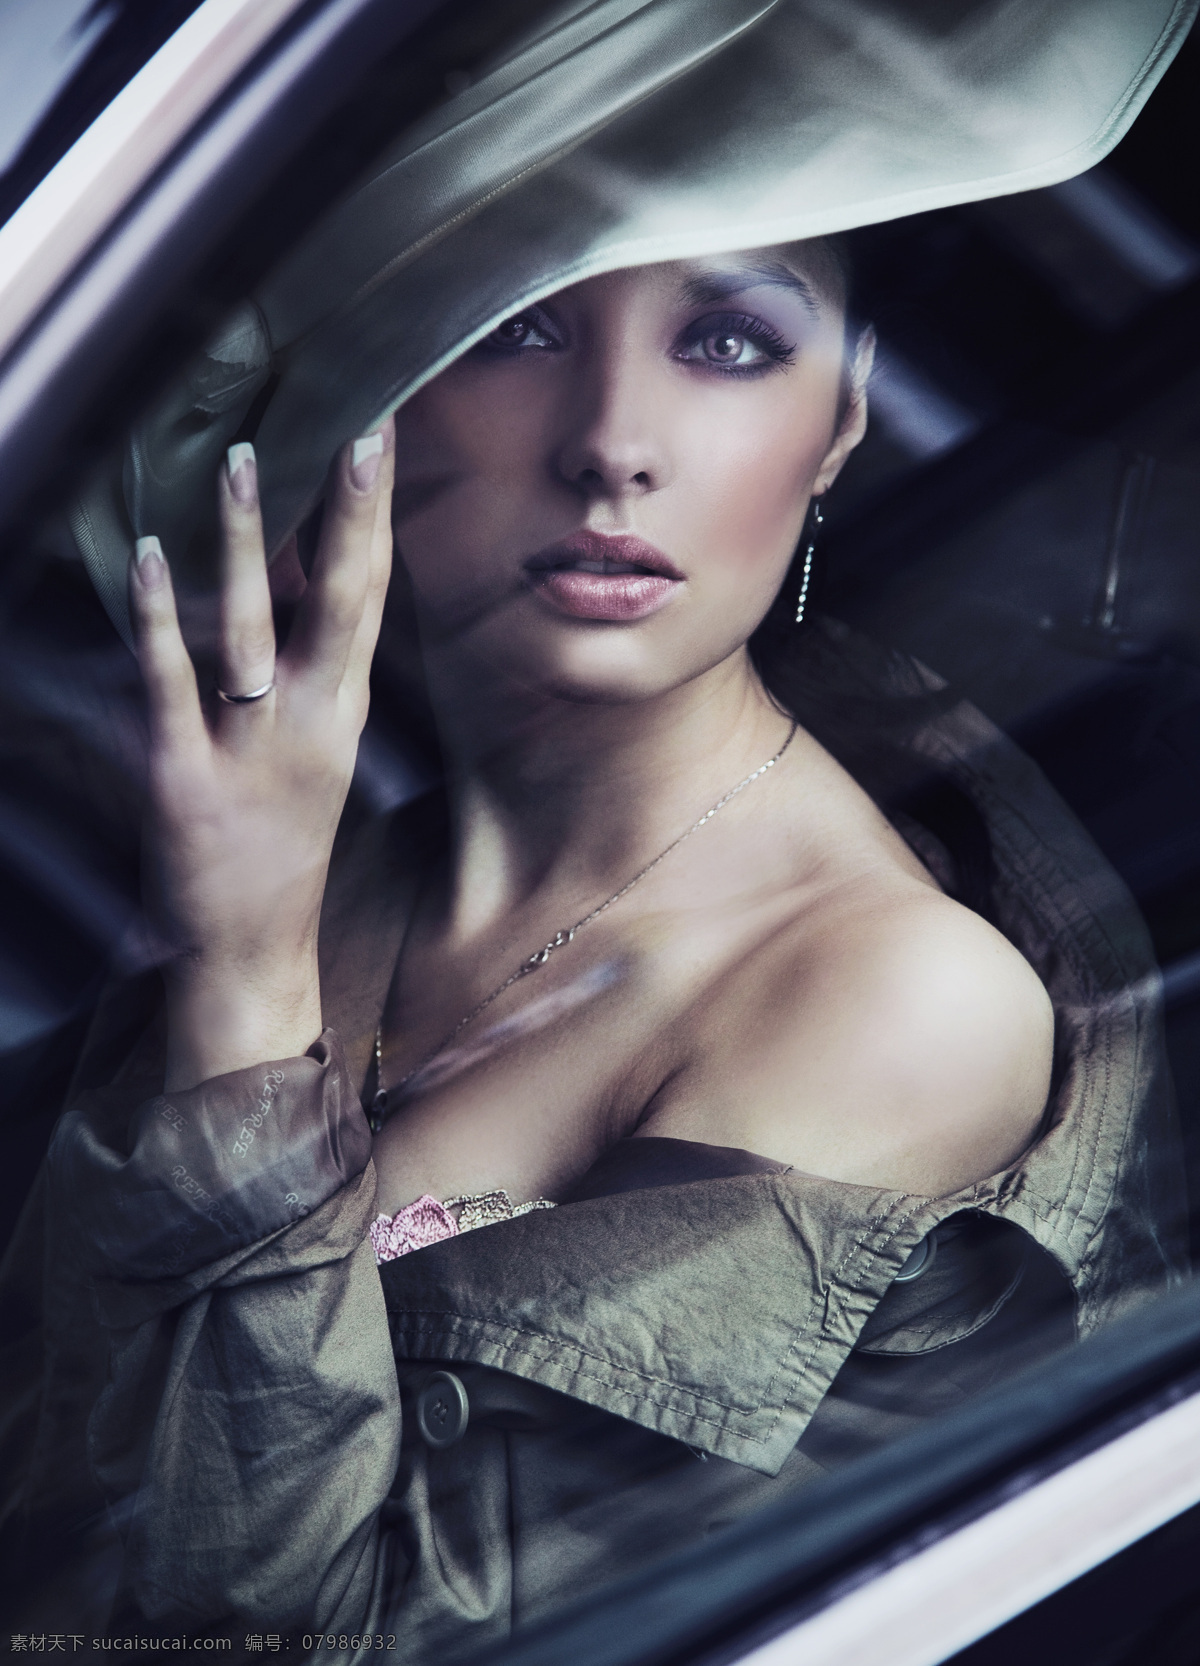 汽车 内 帽子 美女图片 美女 女人 外国人物 美女模特 外国女人 人物图片